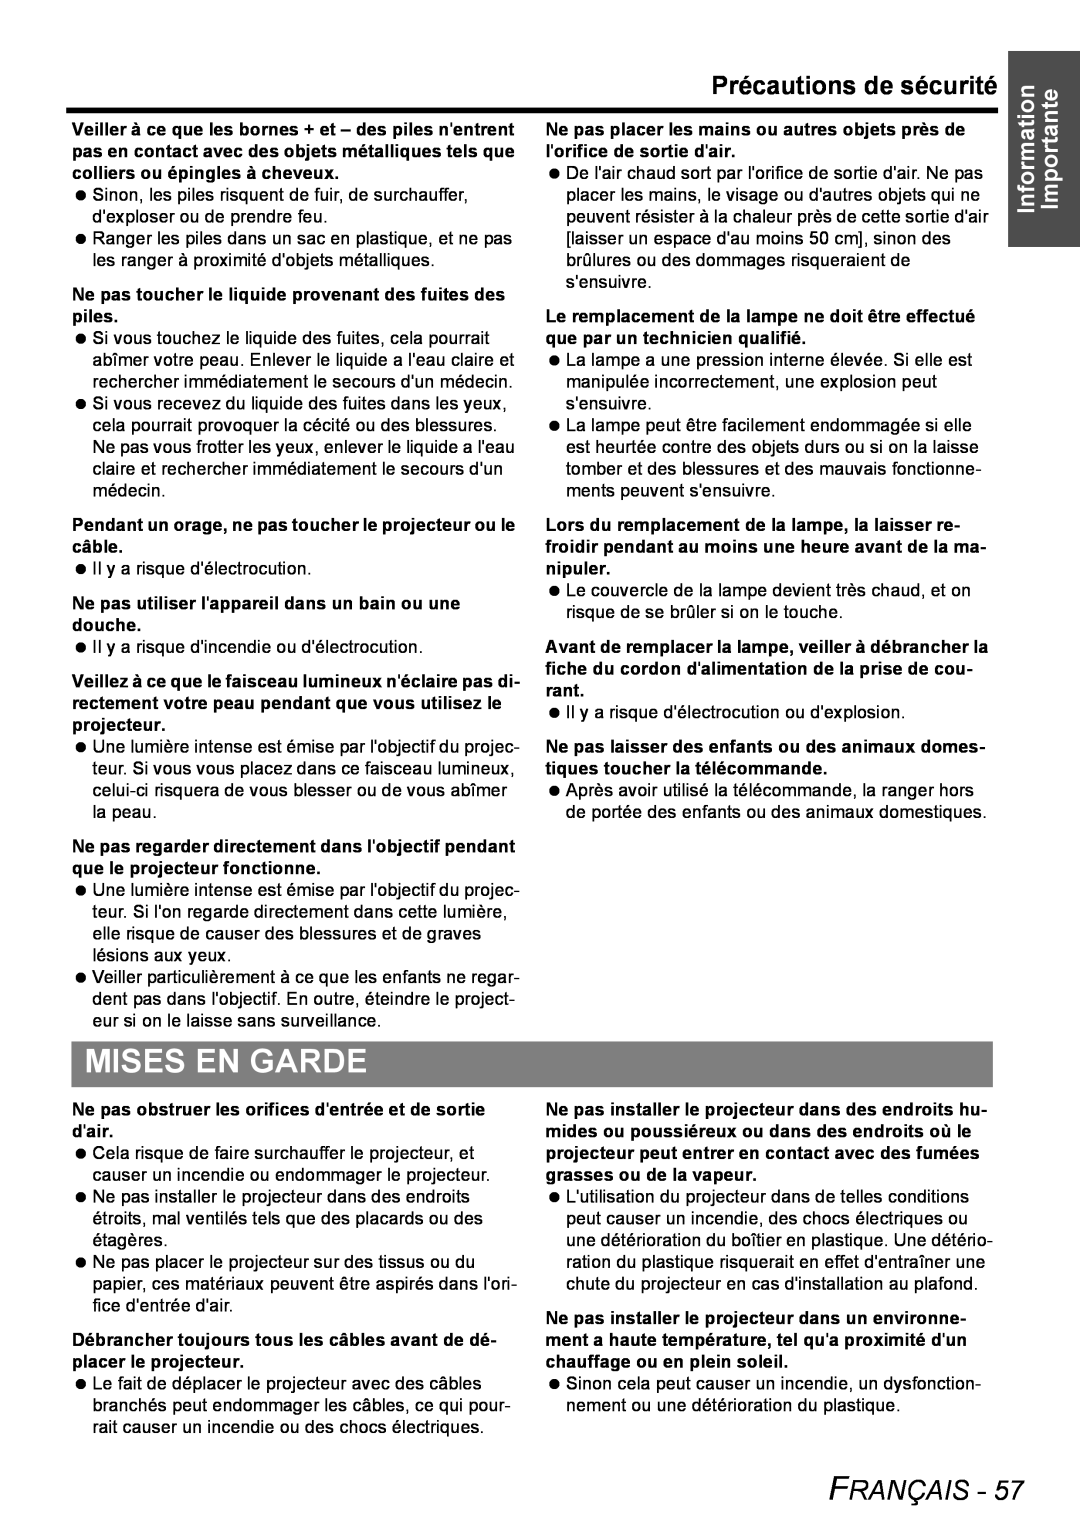 Panasonic PT-FW100NTU manual Mises En Garde, Précautions de sécurité, Français 